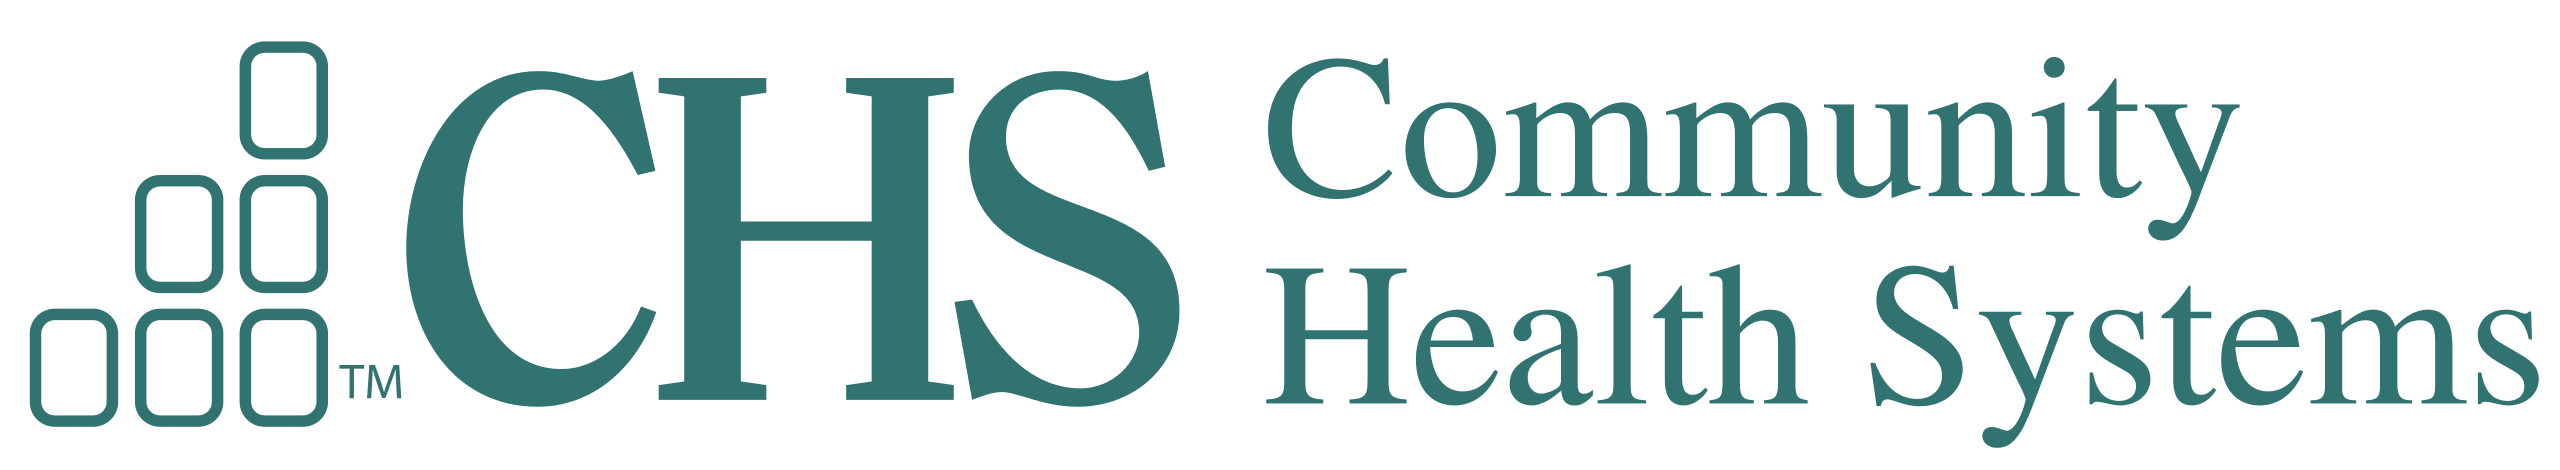 2560px Community Health Systems logo.svg - Annual Summit